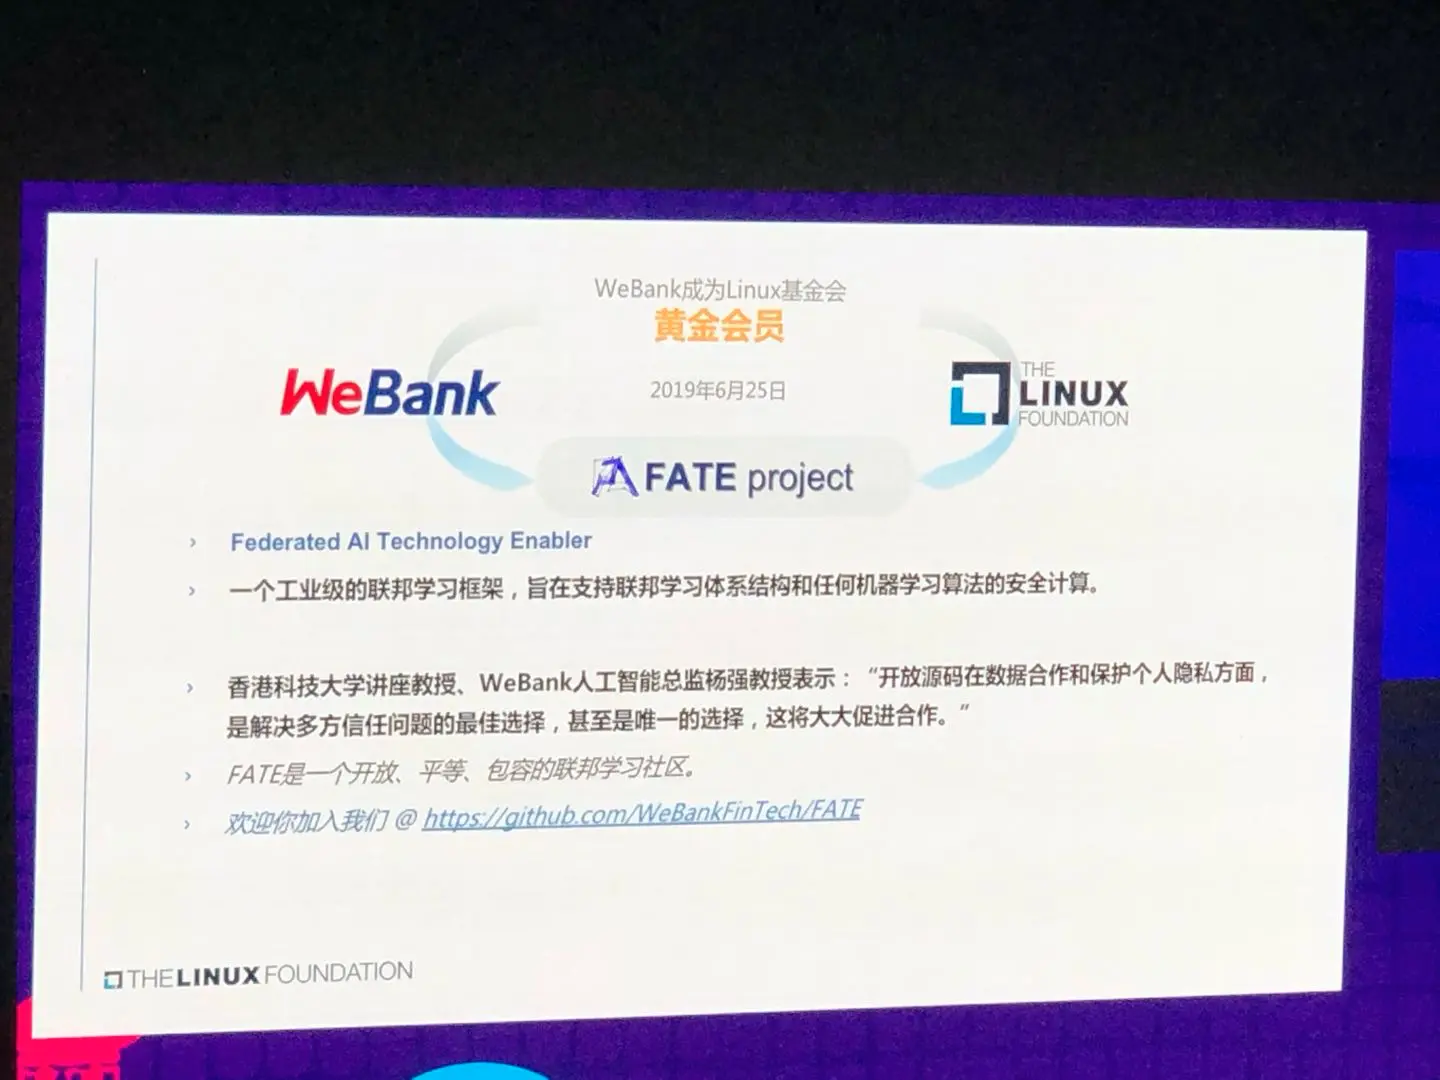 微众银行 WeBank 成为 Linux 基金会的黄金会员